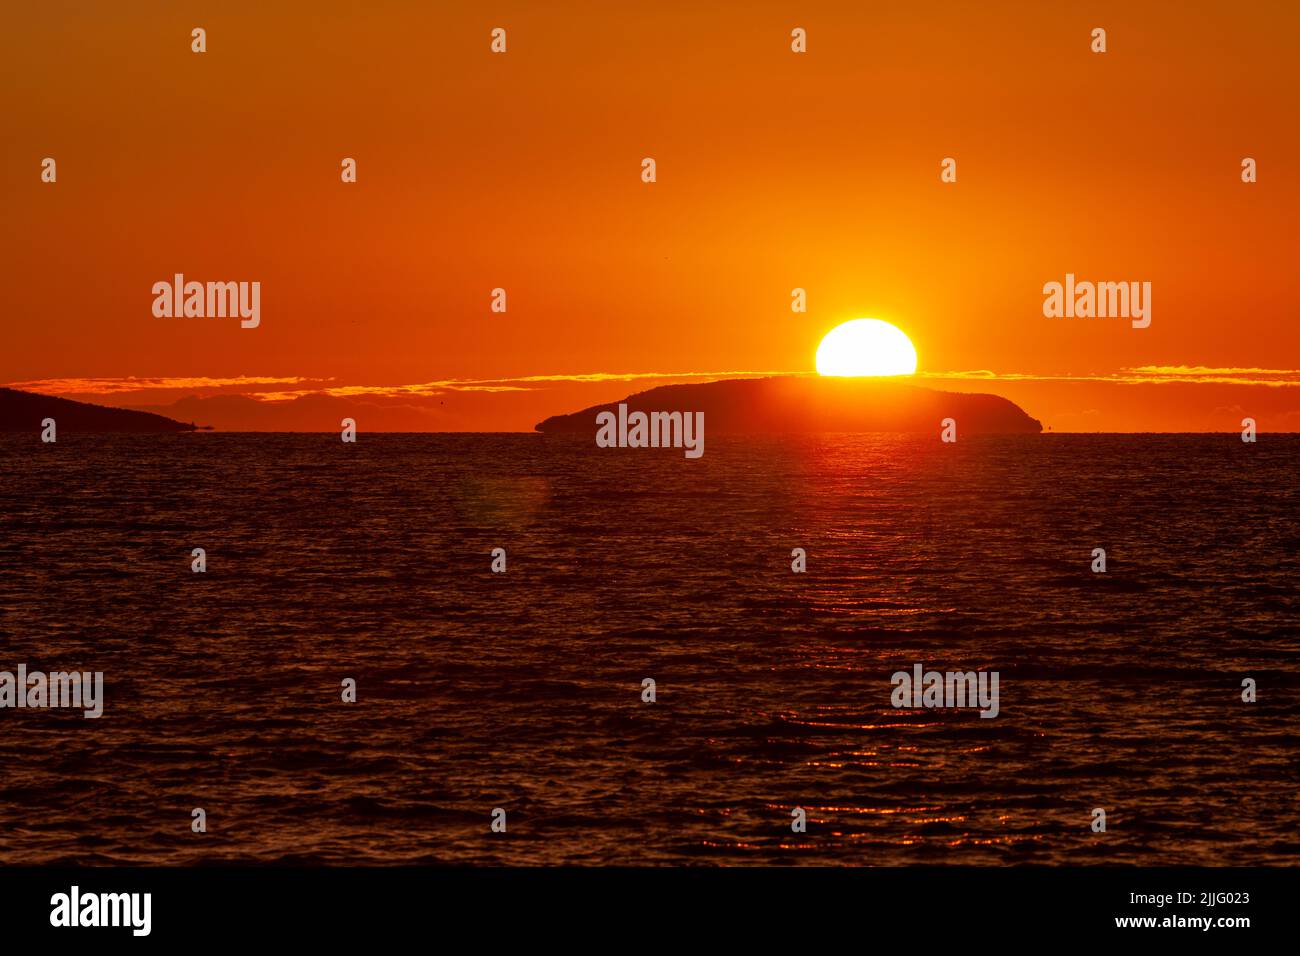 Midnight sun on the horizon above a Norway sea. Stock Photo